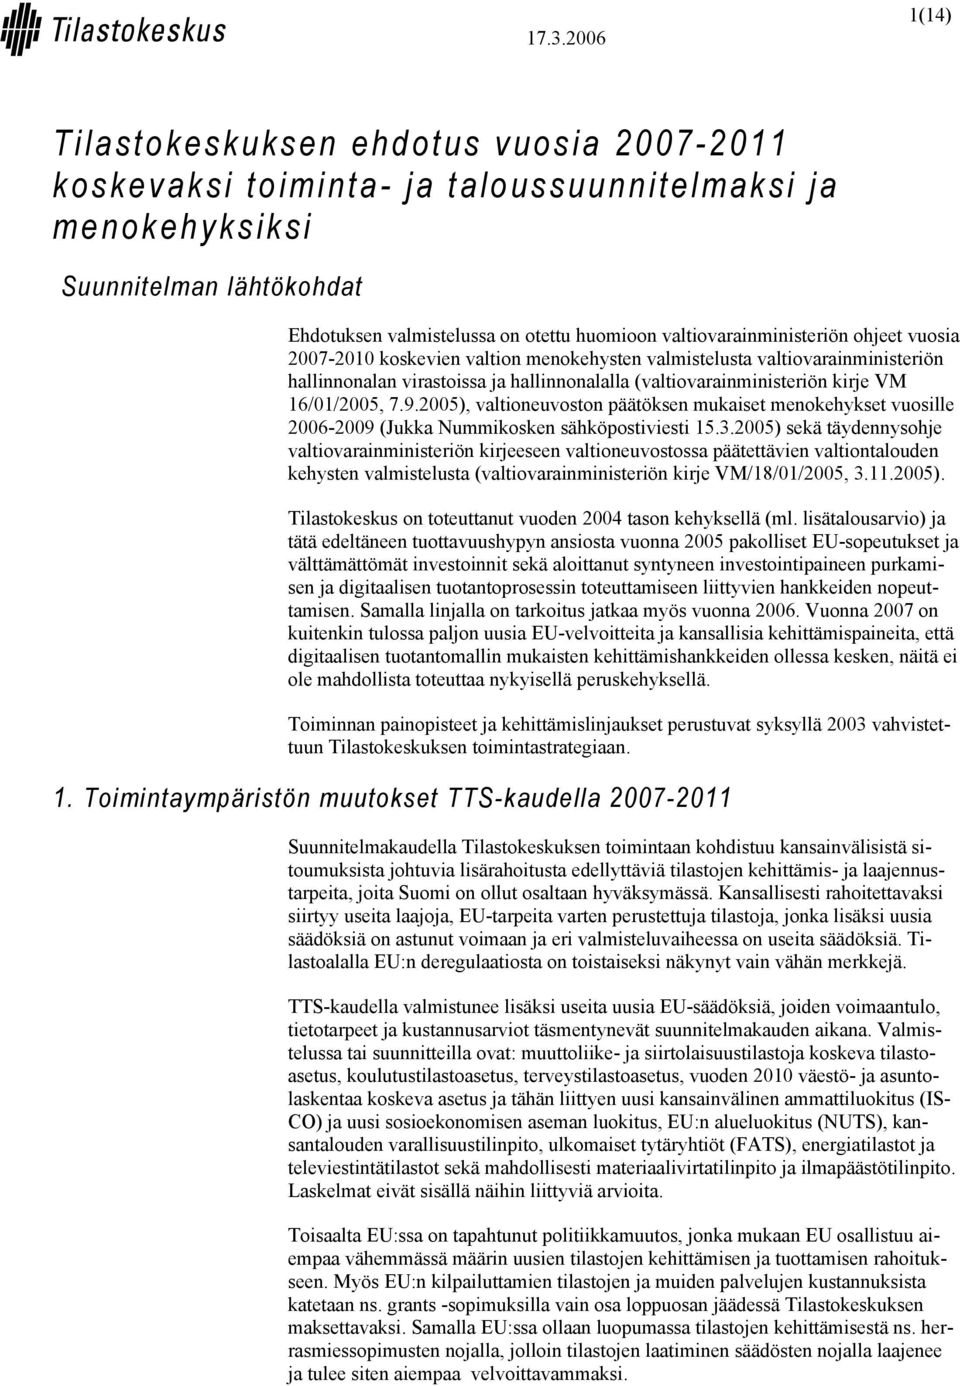 16/01/2005, 7.9.2005), valtioneuvoston päätöksen mukaiset menokehykset vuosille 2006-2009 (Jukka Nummikosken sähköpostiviesti 15.3.